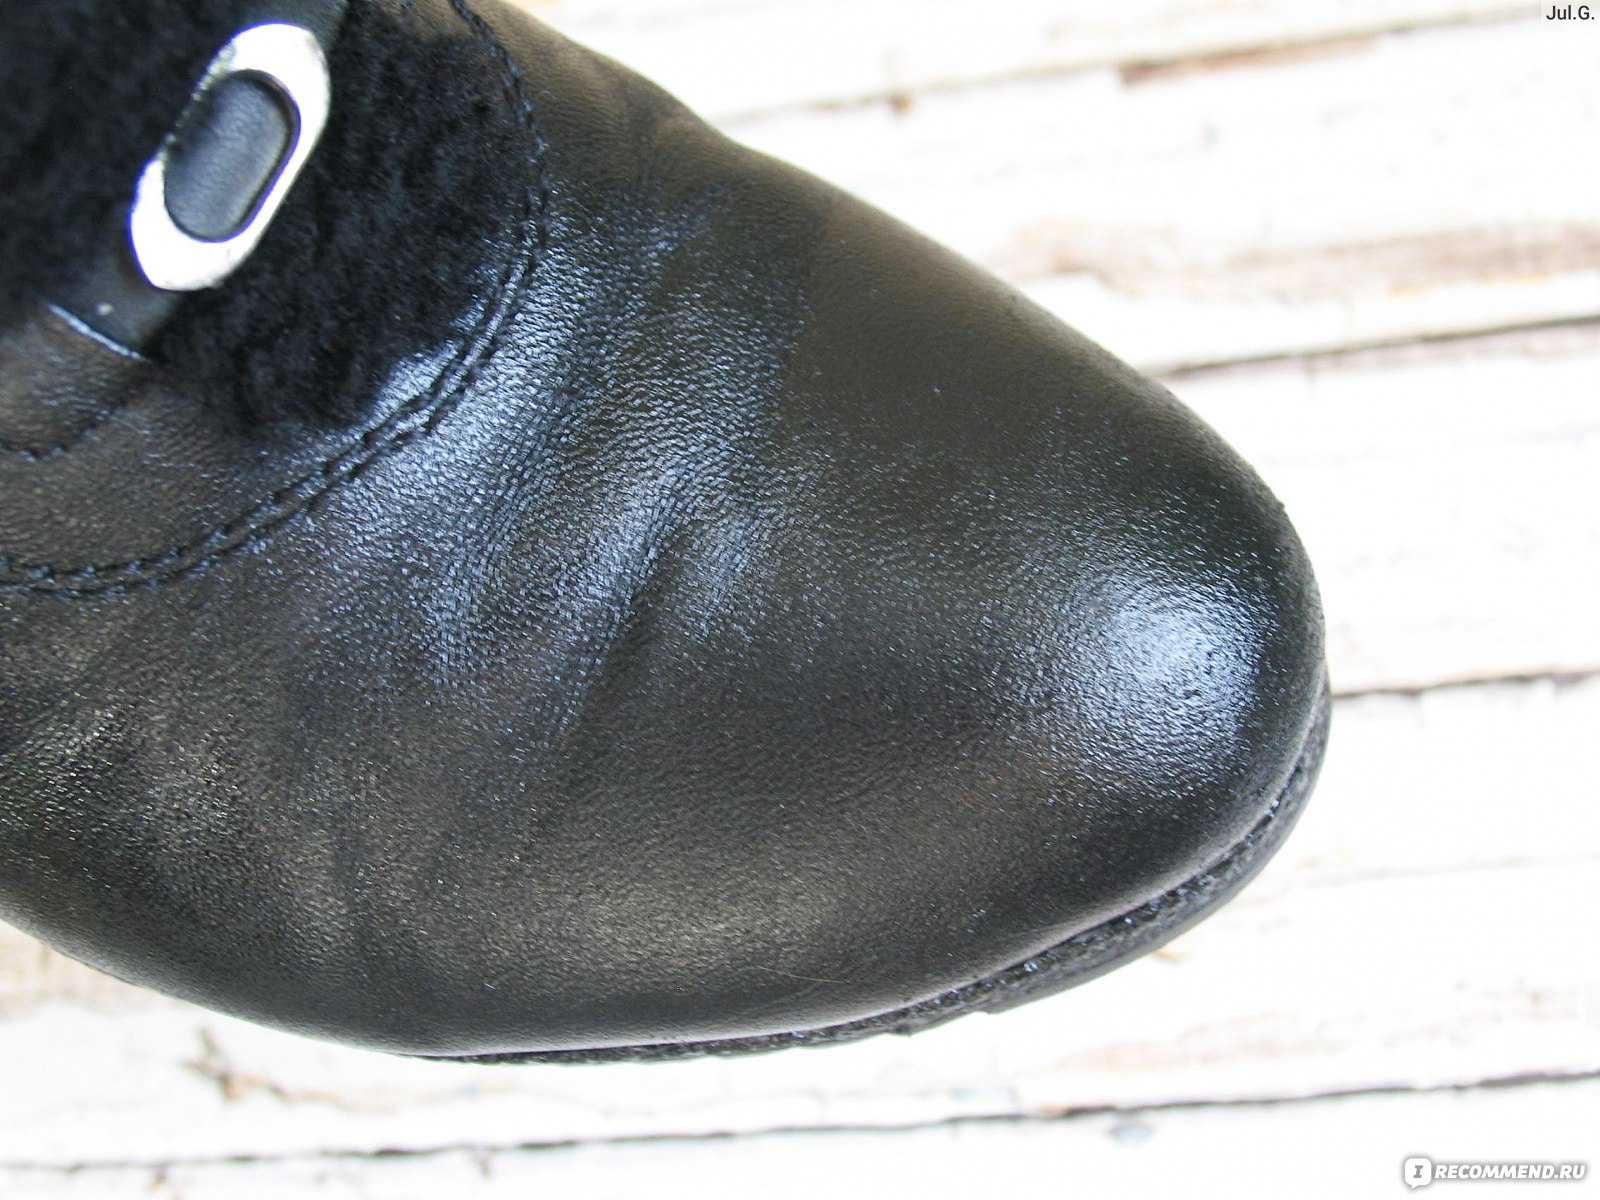 Как мастера сервиса по реставрации обуви справляются с царапинами на лакированных туфлях